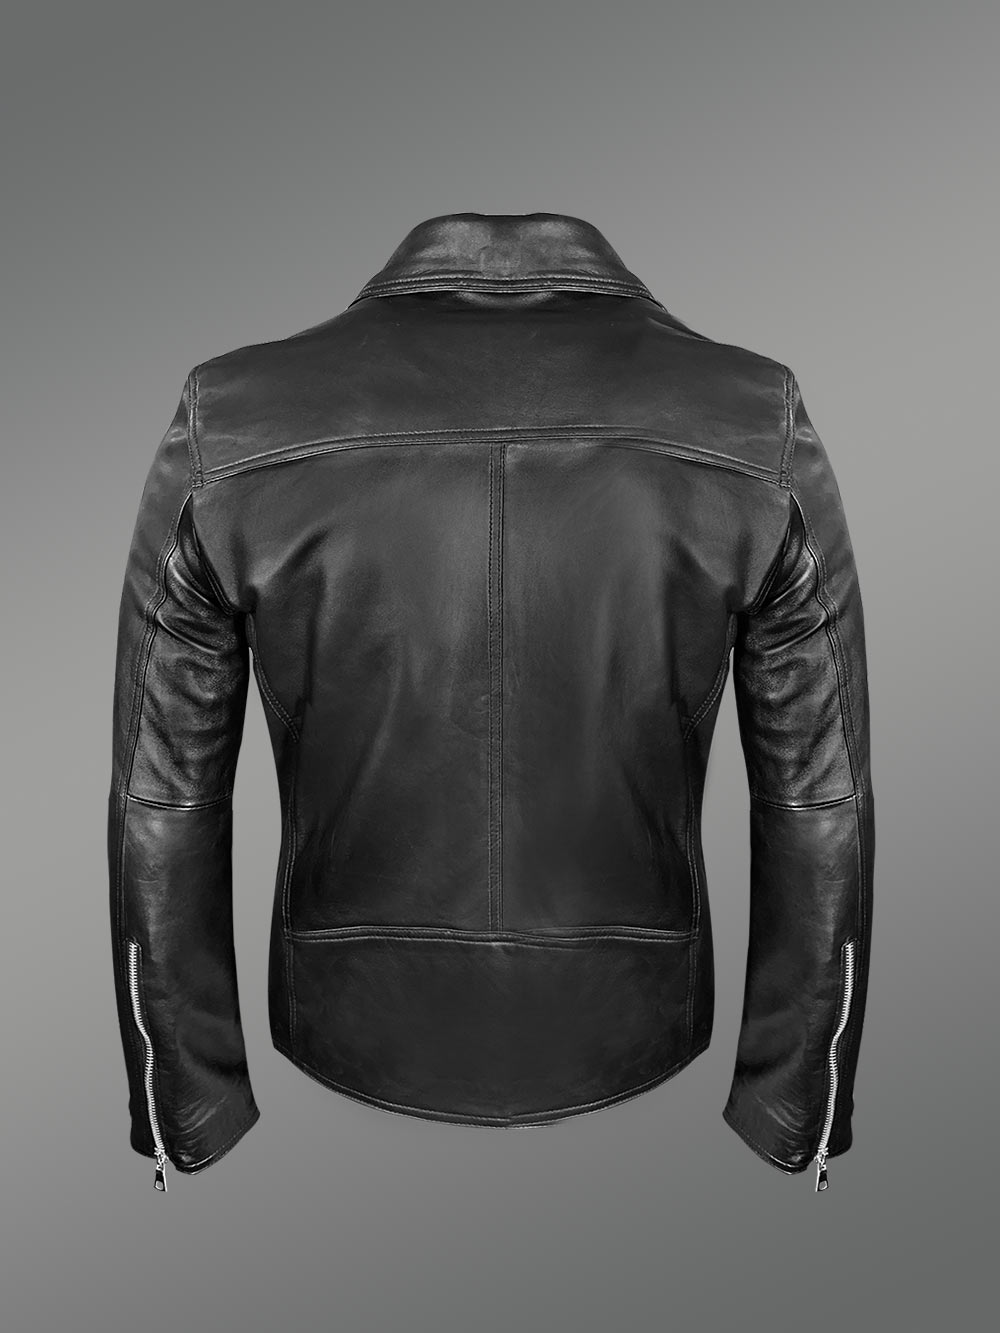 Black Leather Motorcycle Biker Jacket for Men